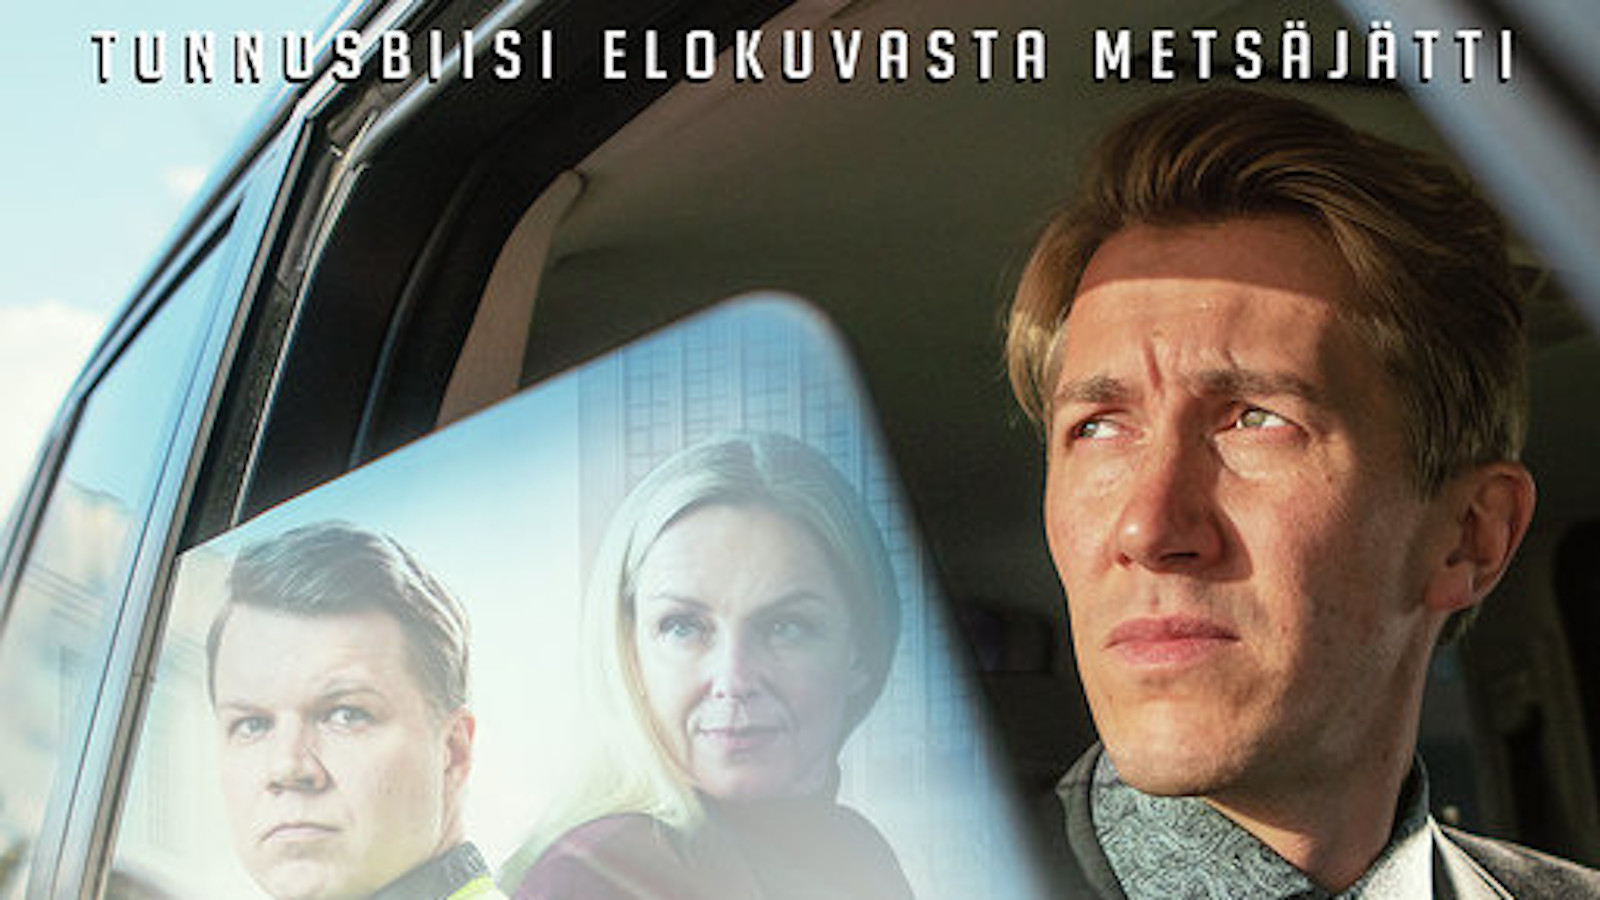 Kuvassa on Metsäjätti -elokuvan juliste, jossa on päähenkilöinä ovat Hannes Suominen, Sara Soulié ja Jussi Vatanen.  Julisteessa ovat heidän kasvokuvansa.